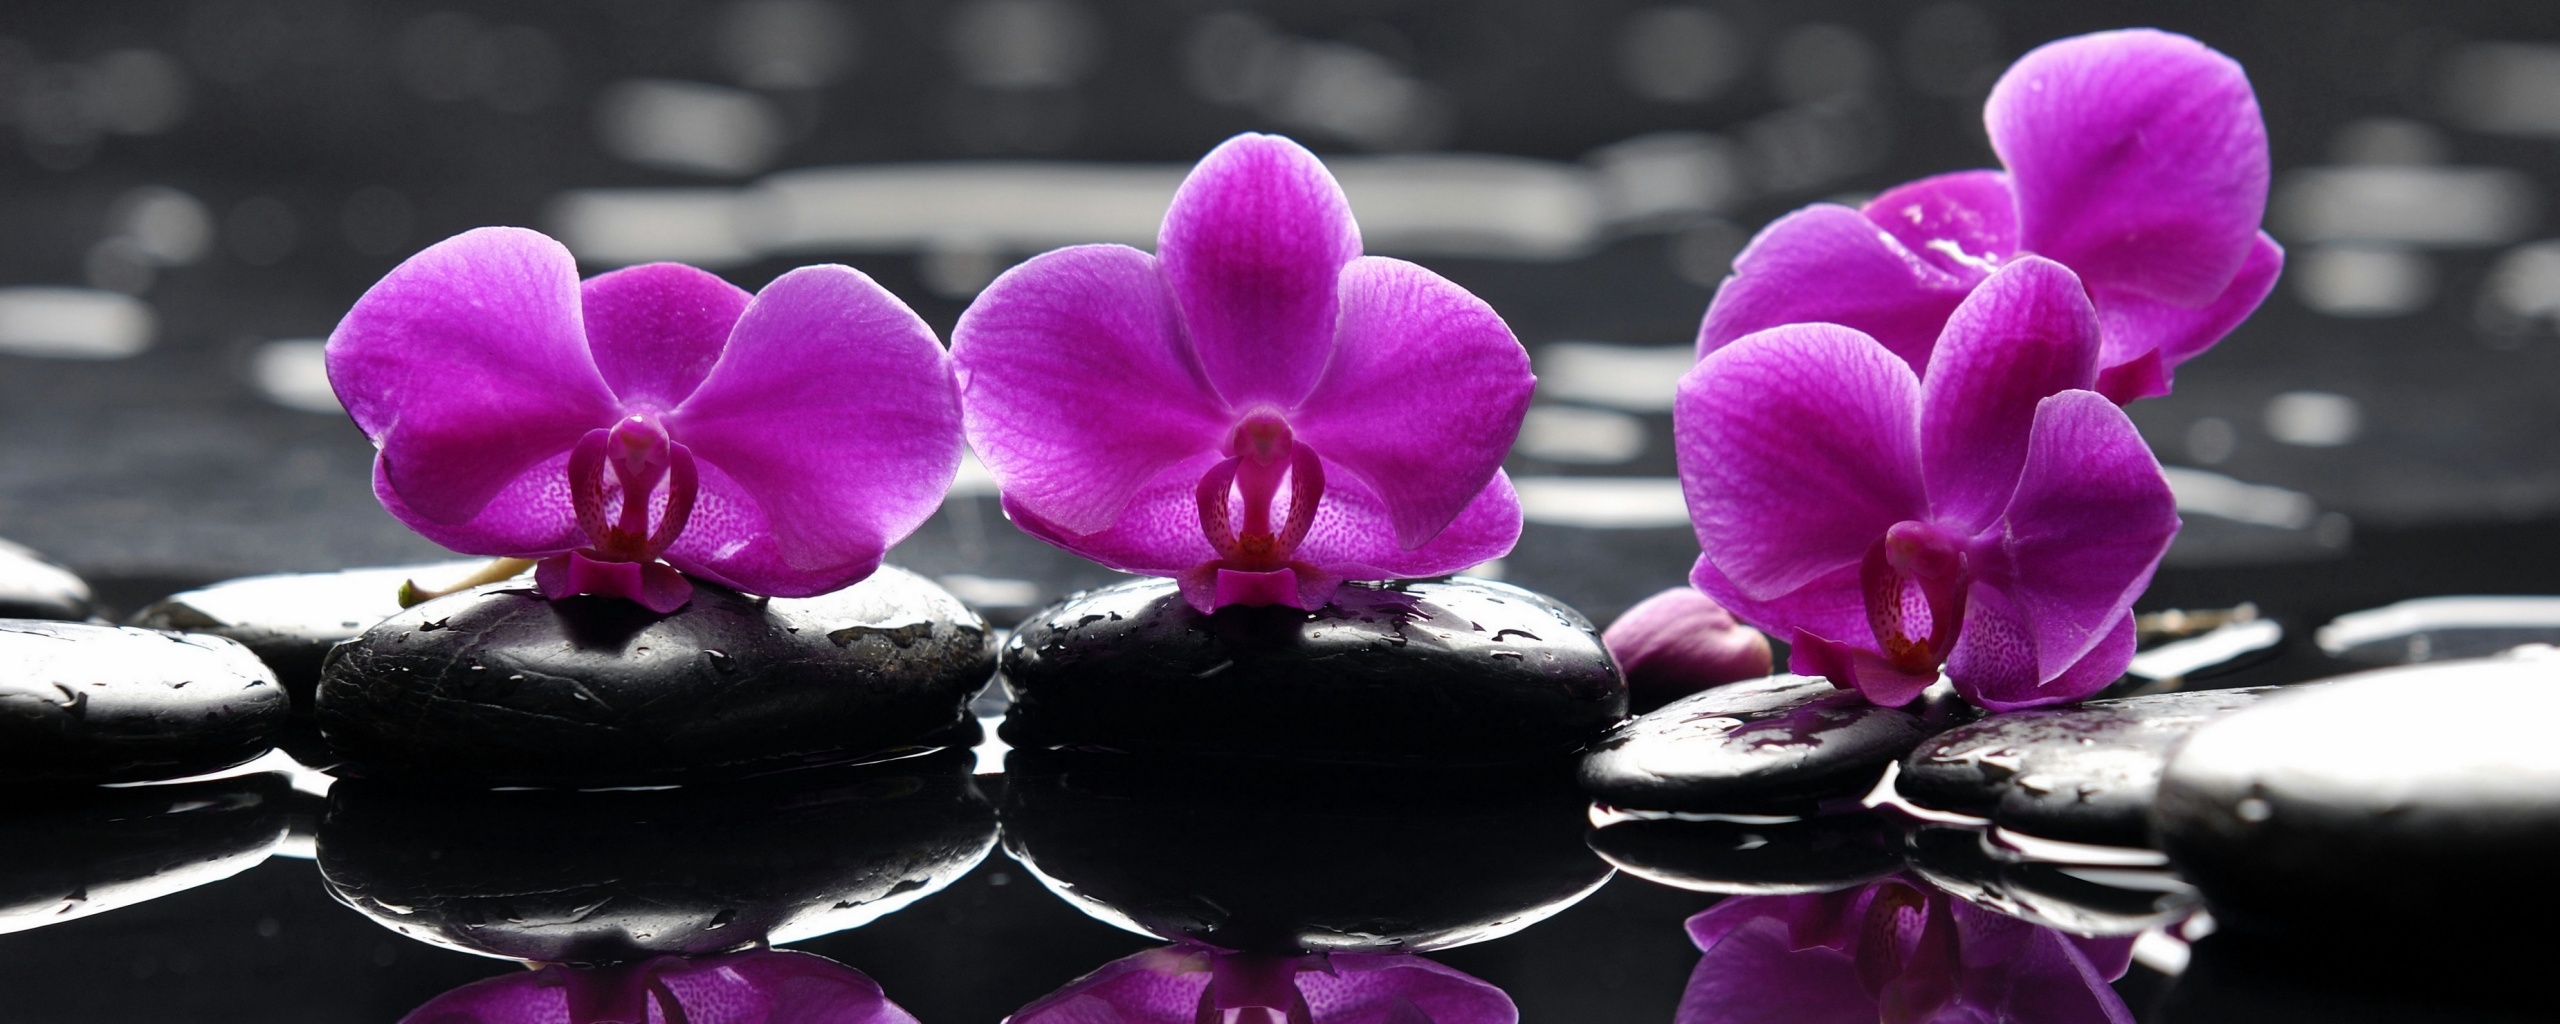 Орхидеи на камнях обои